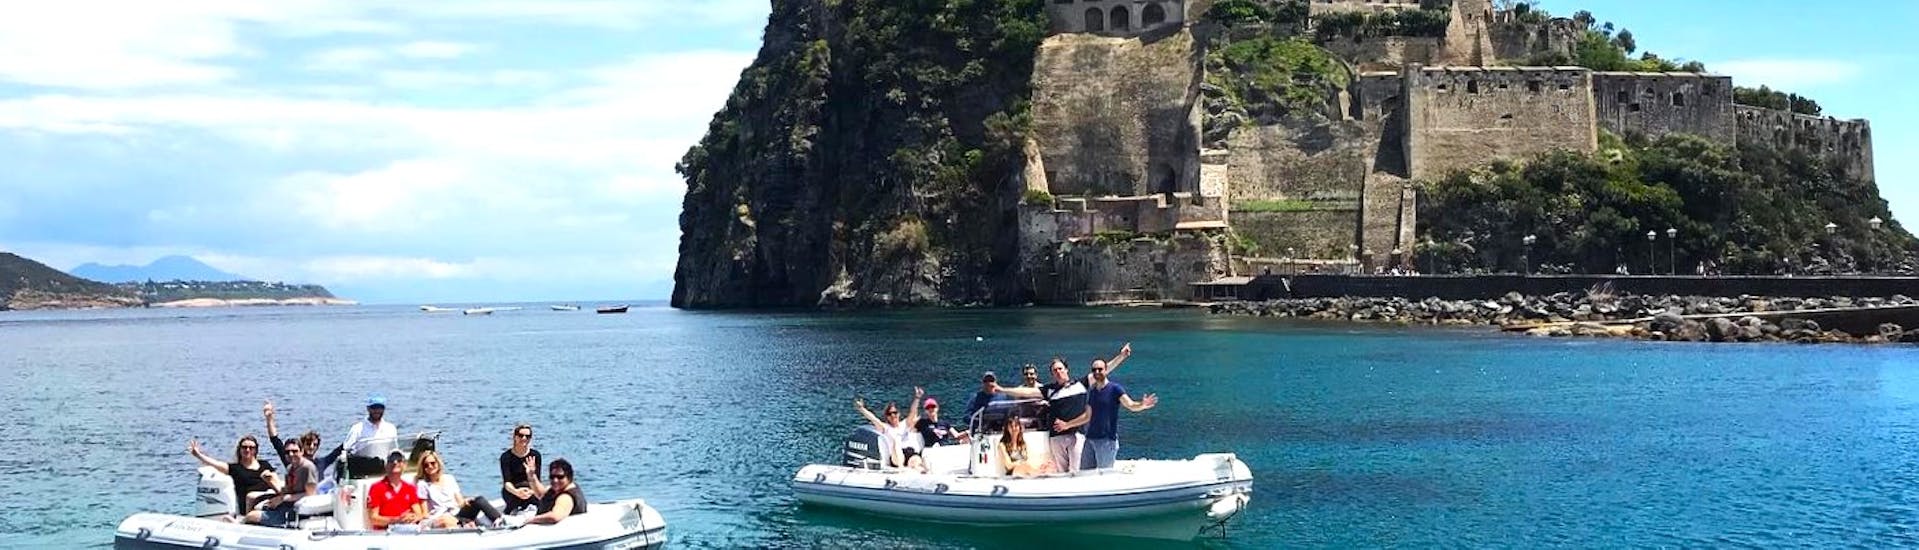 Vista del Castello Aragonese che puoi vedere durante la gita in gommone a Ischia e Procida con aperitivo e snorkeling organizzata da Seaside Napoli.